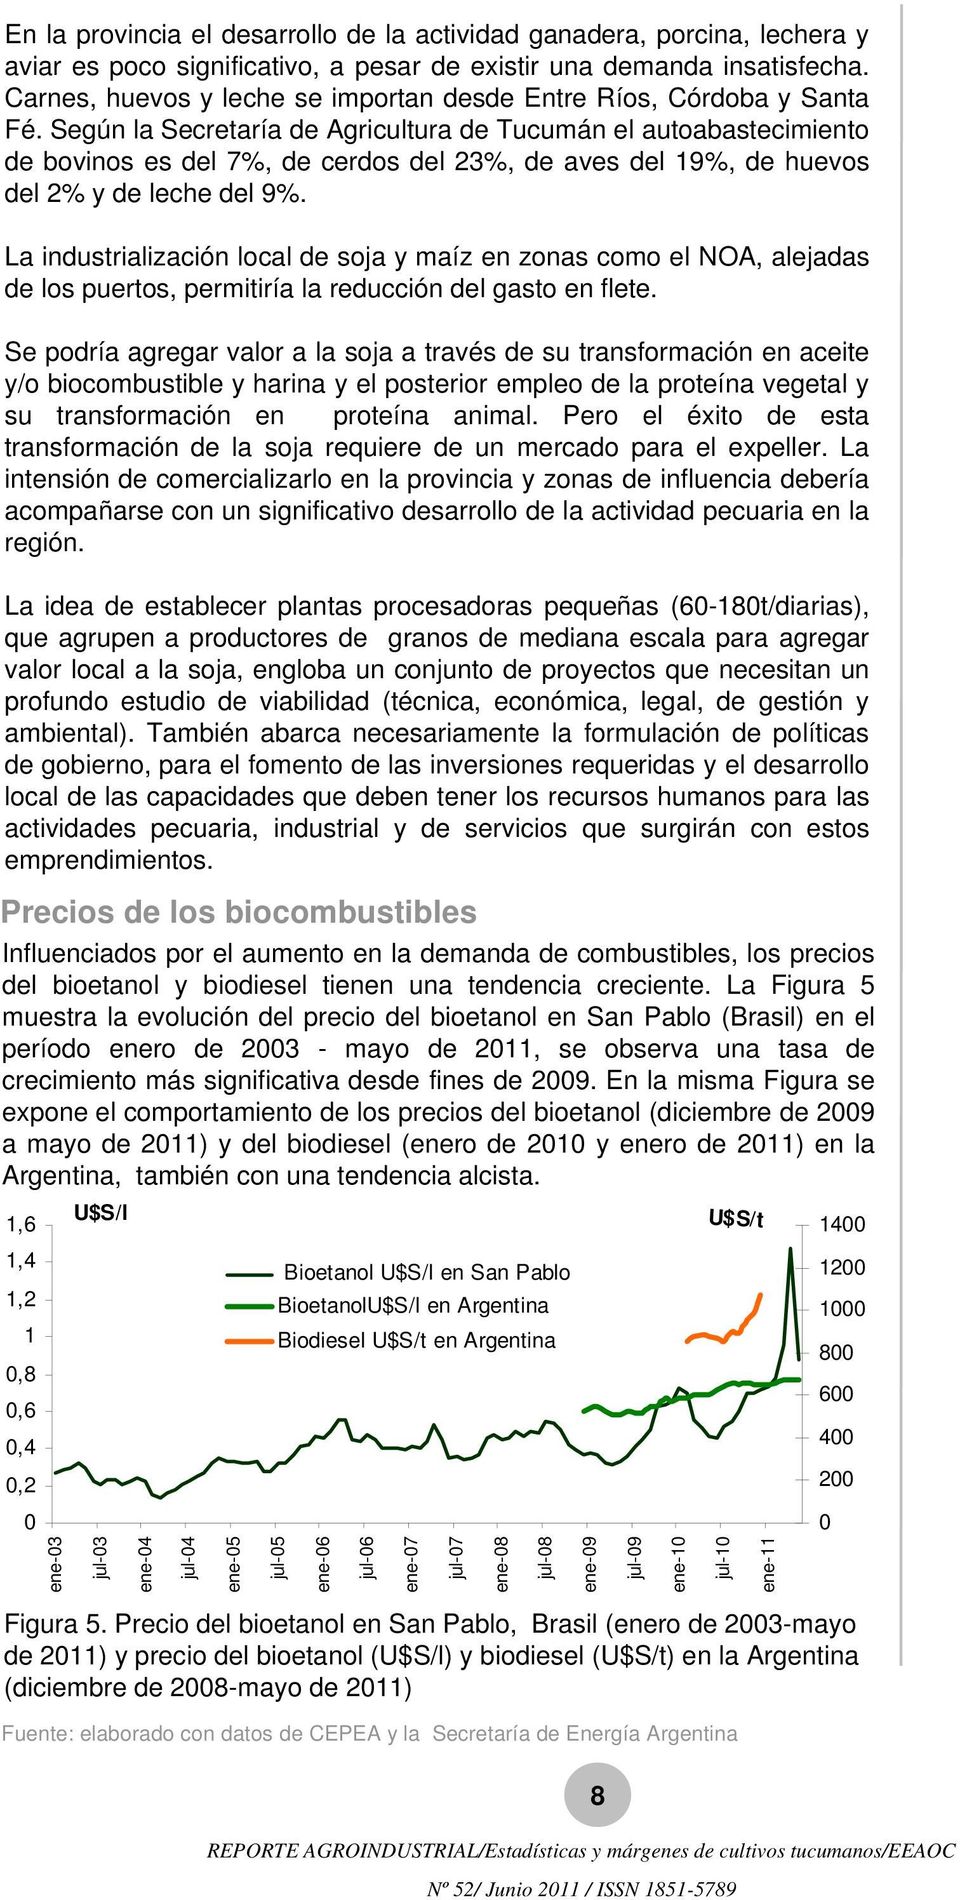 Según la Secretaría de Agricultura de Tucumán el autoabastecimiento de bovinos es del 7%, de cerdos del 23%, de aves del 19%, de huevos del 2% y de leche del 9%.